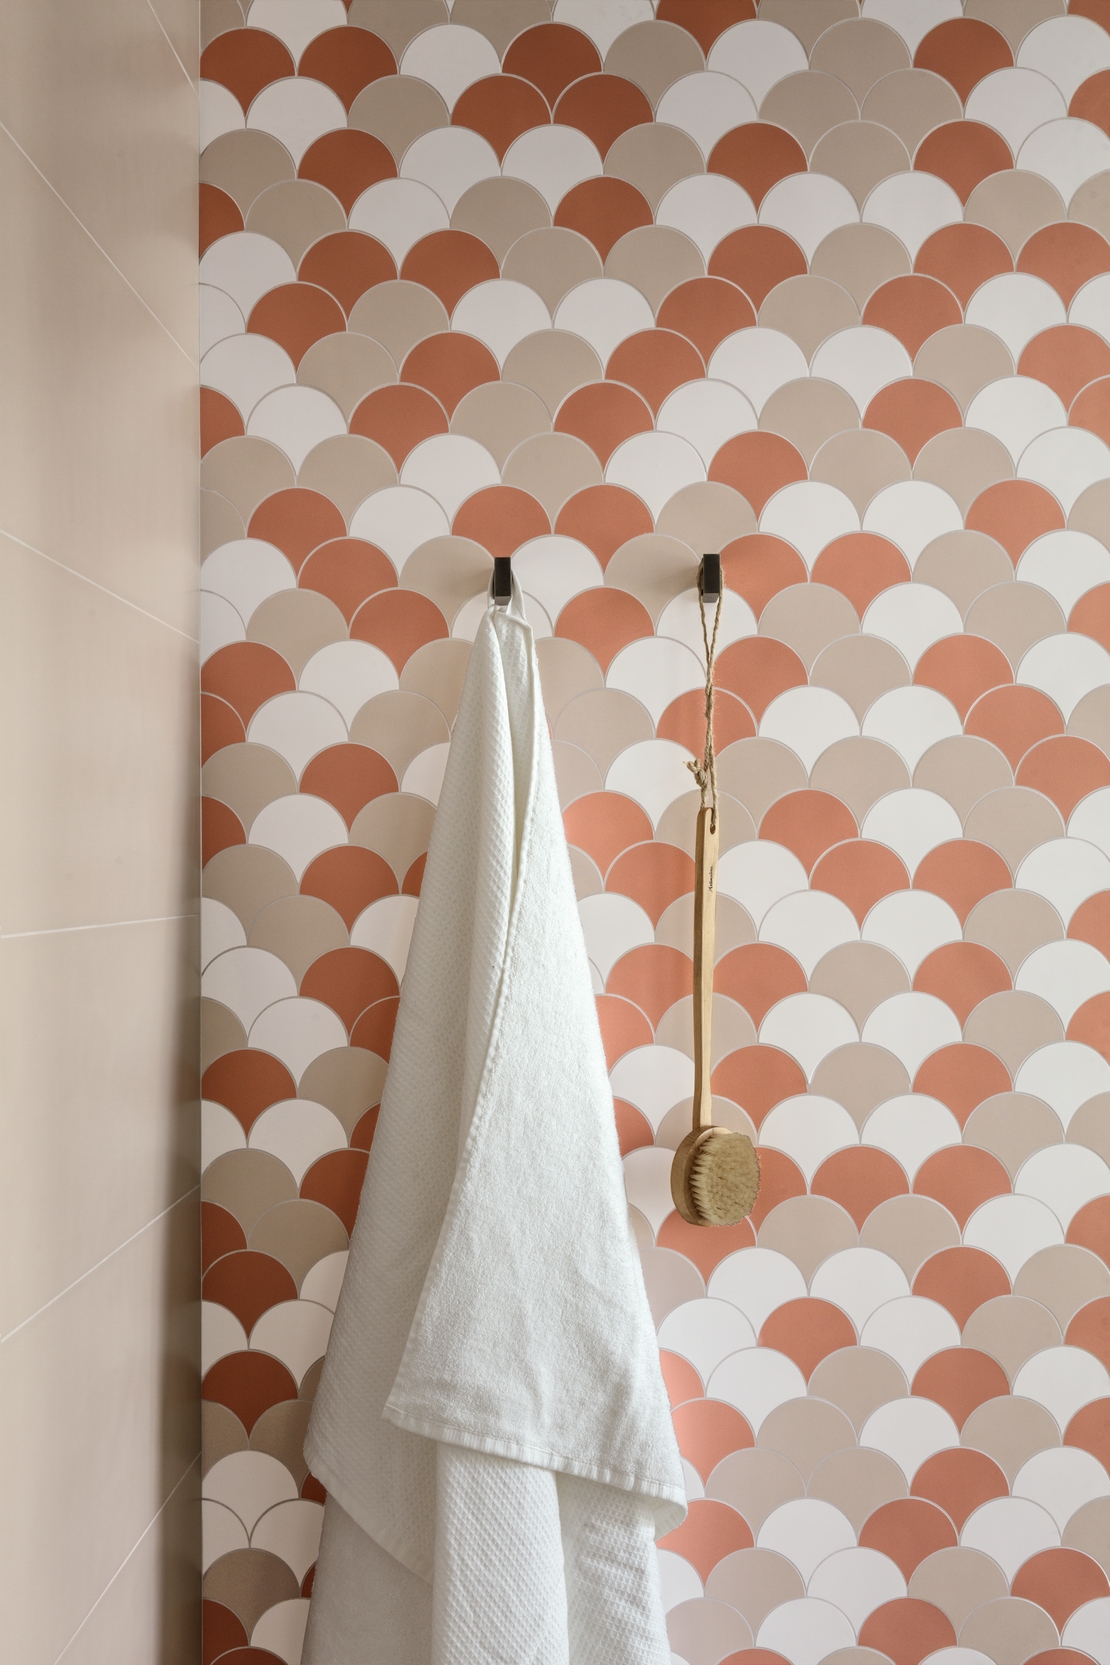 Salle de bains moderne avec douche. Carrelage mural coloré beige et mosaïque en blanc, rose et beige. - Inspirations Iperceramica